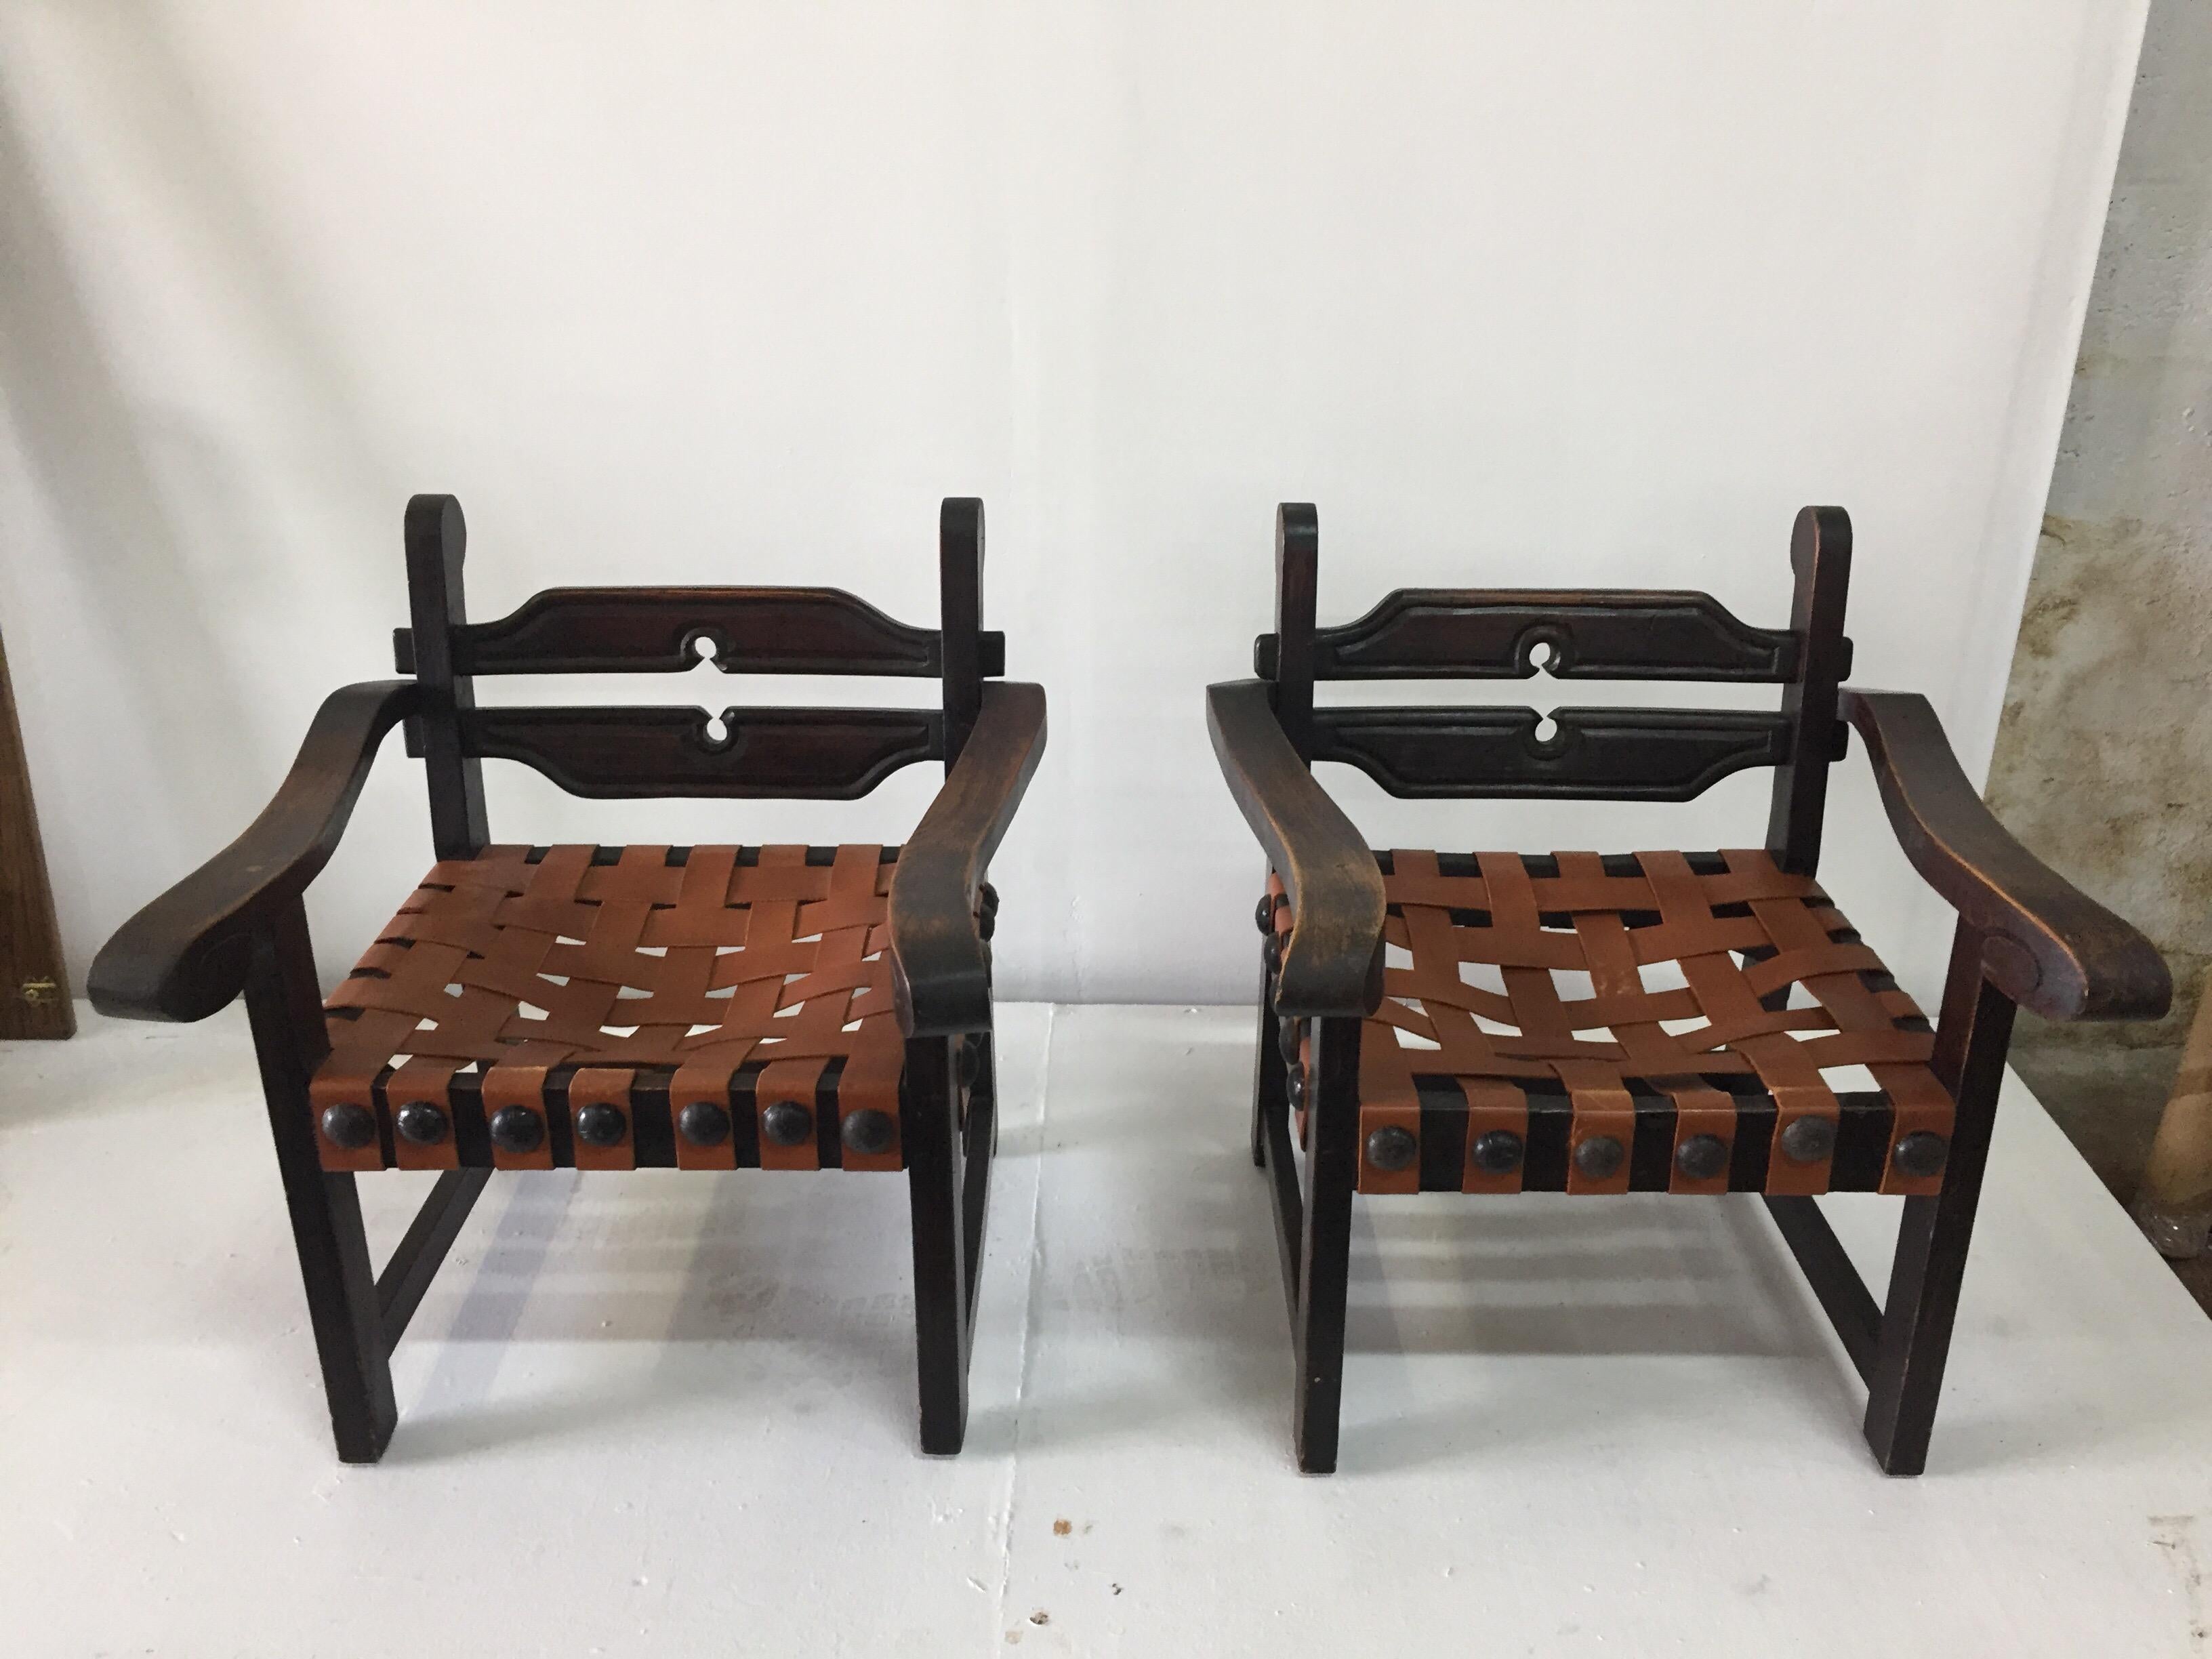 Il s'agit d'une magnifique paire de chaises authentiques de l'artiste et orfèvre designer William Spratling, fabriquées dans son atelier de Taxco dans les années 40.  Sièges en bois de sabino et en cuir véritable, garniture rustique et originale de